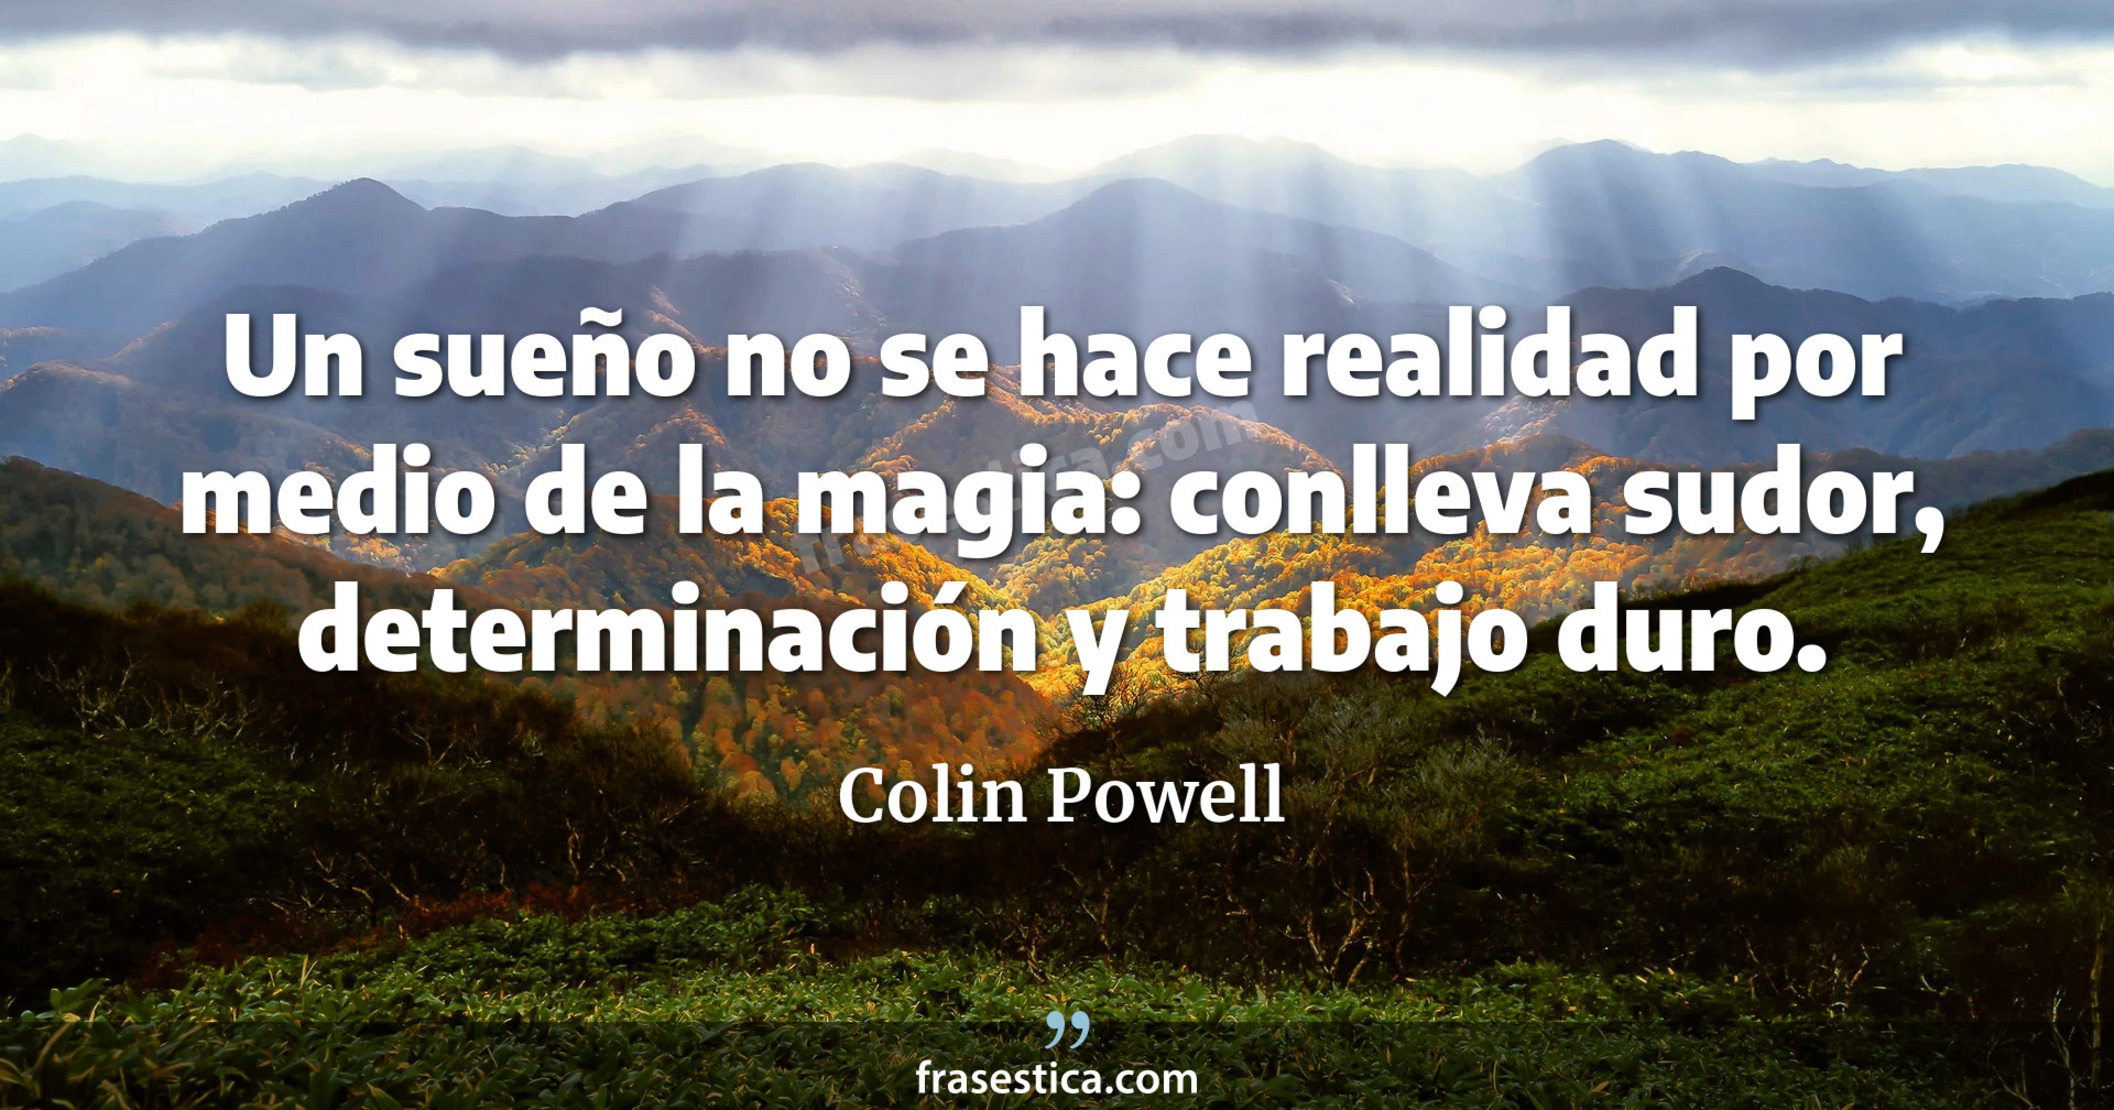 Un sueño no se hace realidad por medio de la magia: conlleva sudor, determinación y trabajo duro. - Colin Powell